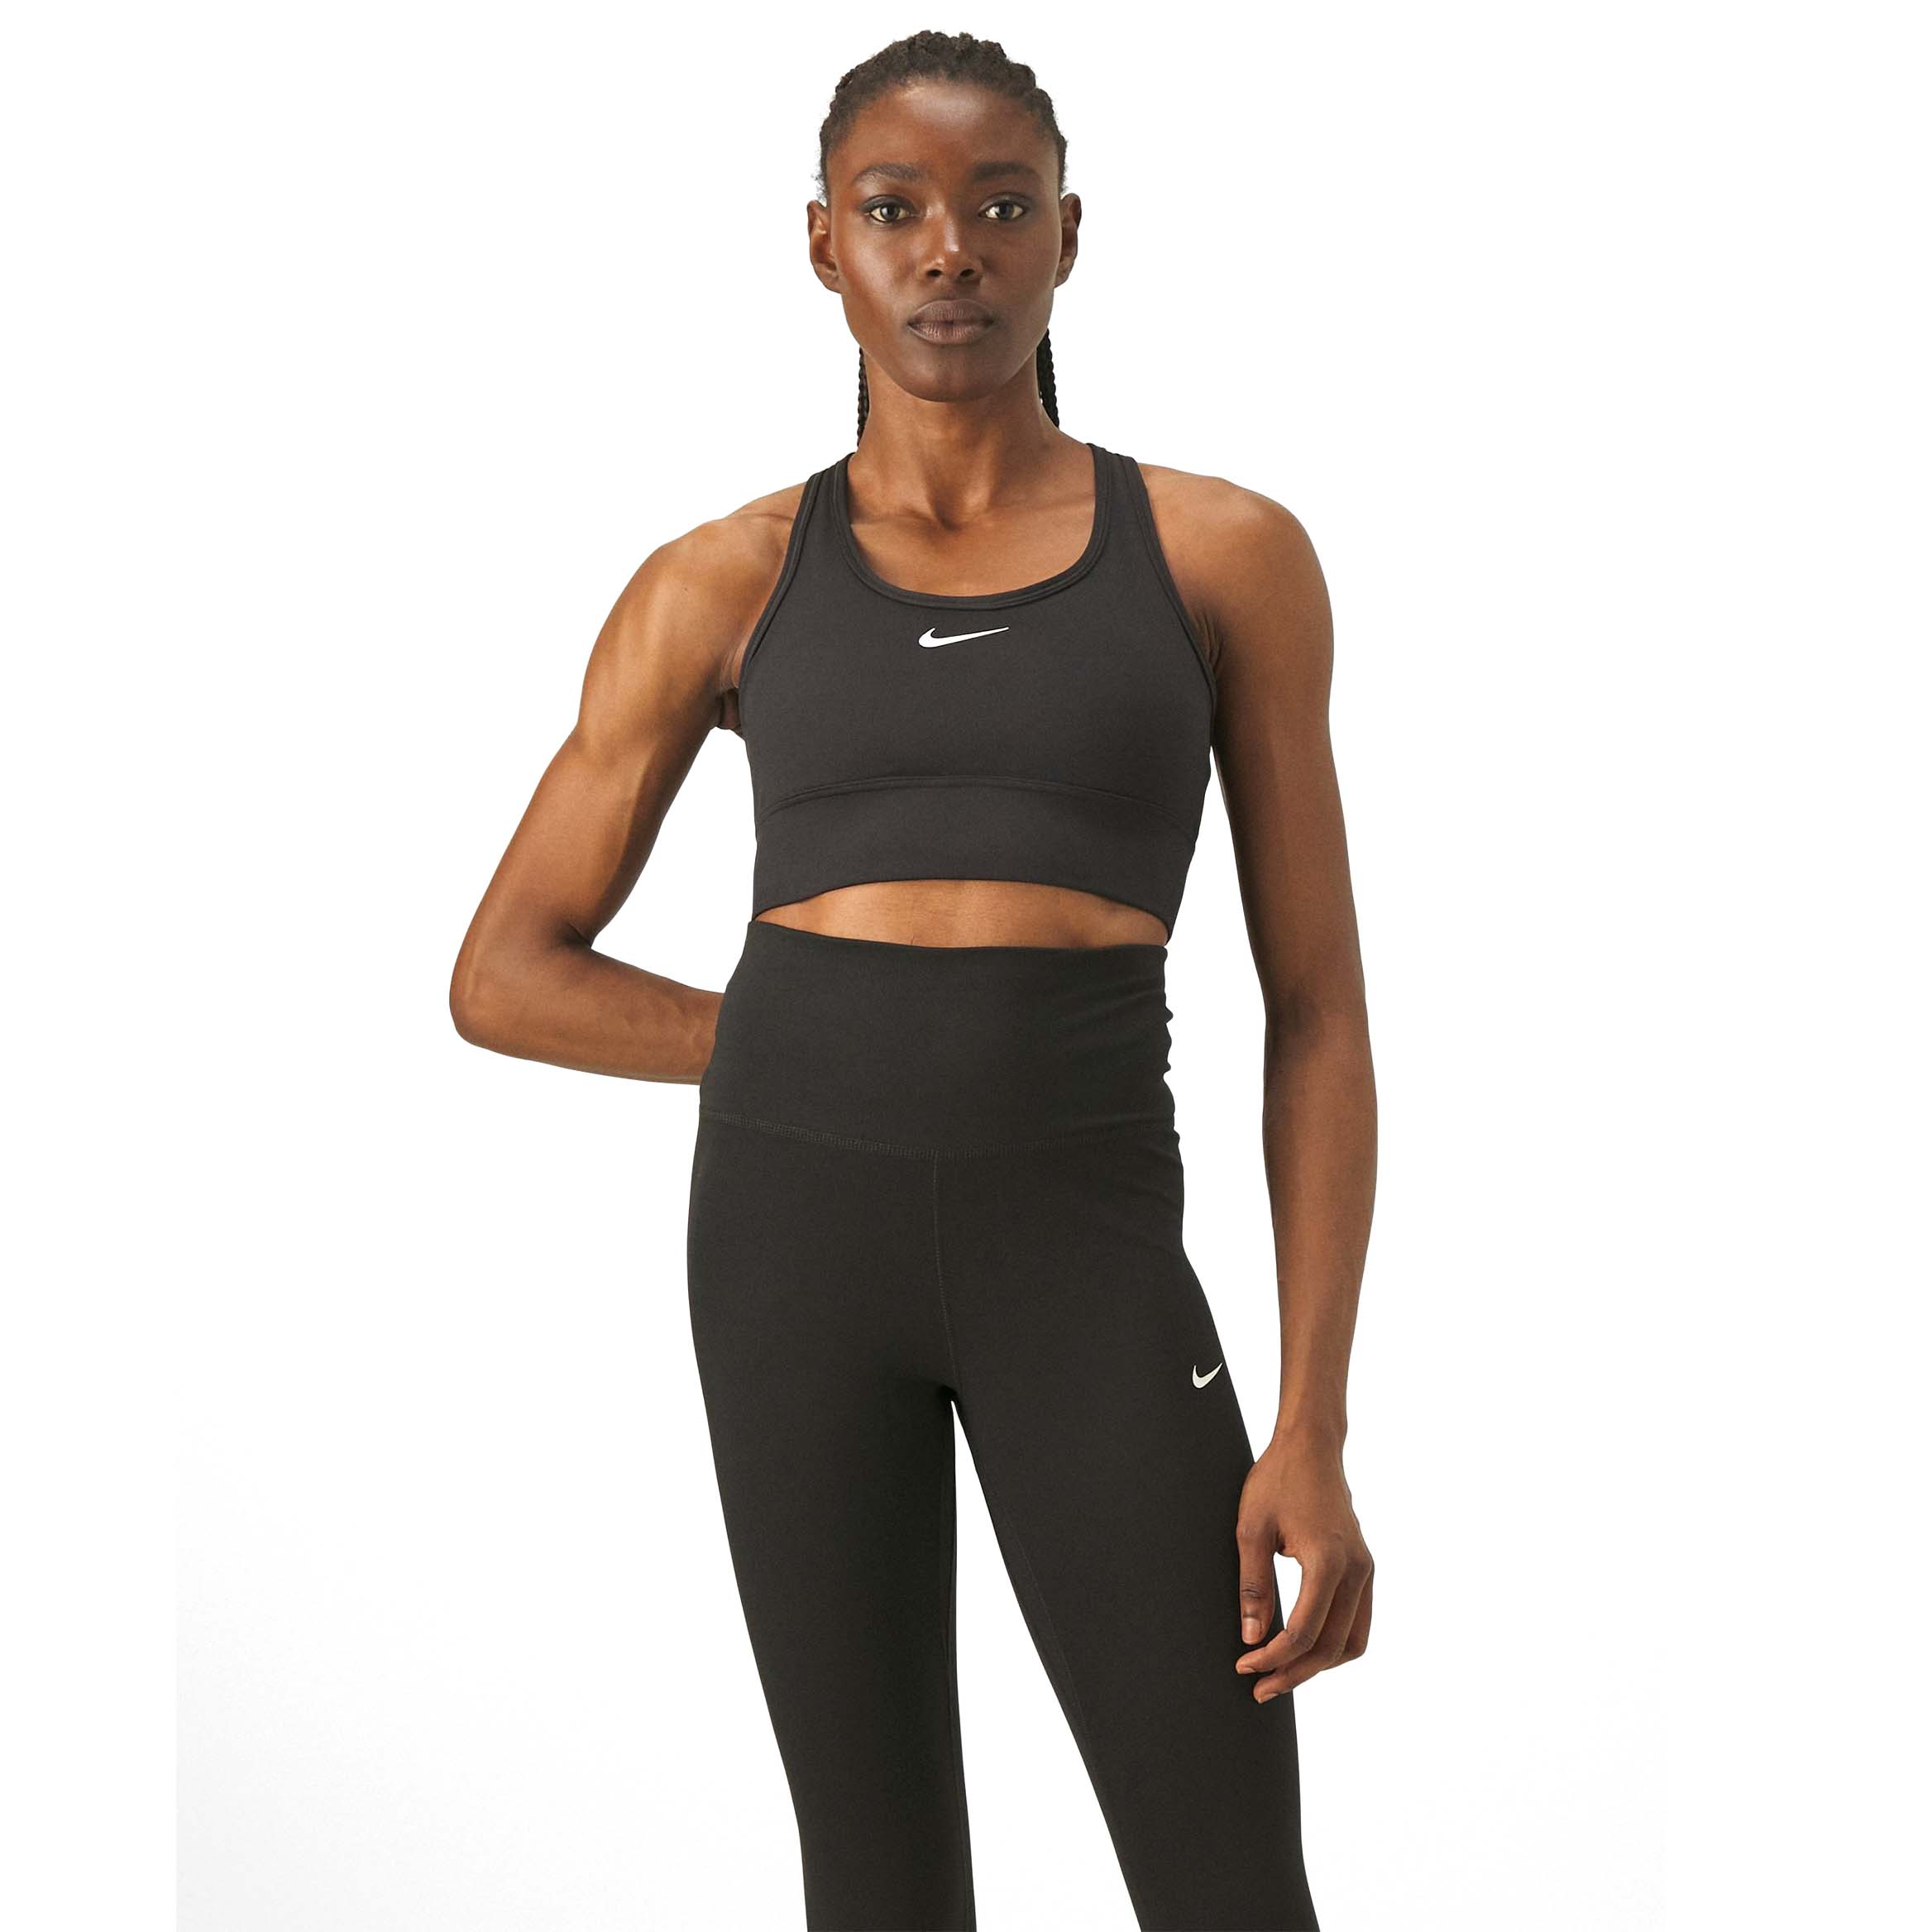 Топ Nike Performance Medium Support Sports, черный/белый цена и фото